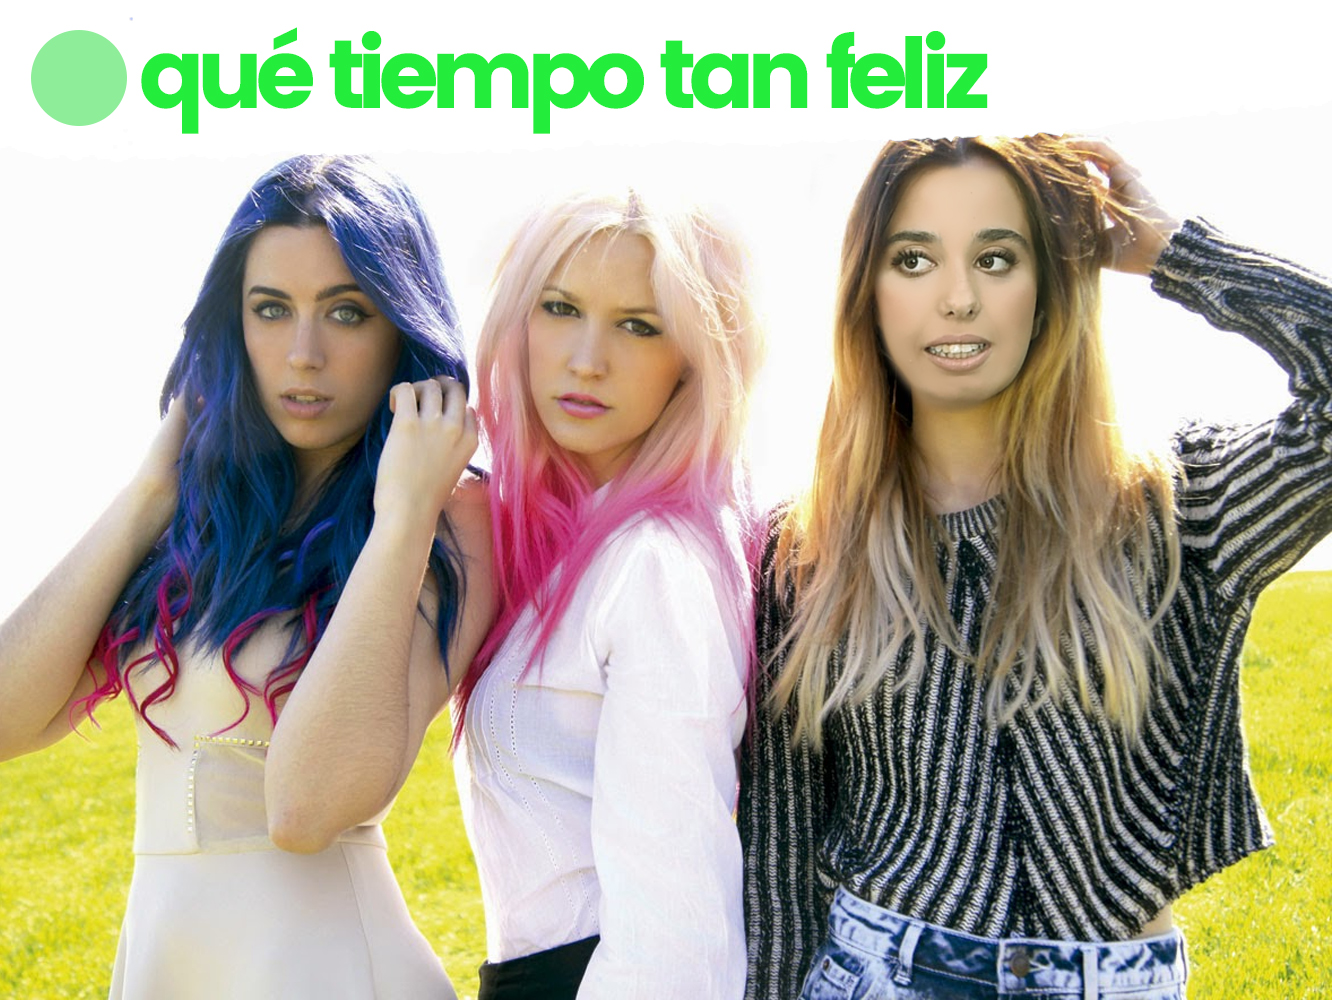 QTTF | ‘This Is The Life’, el bop country-pop de Sweet California que revitalizó las girlbands en España